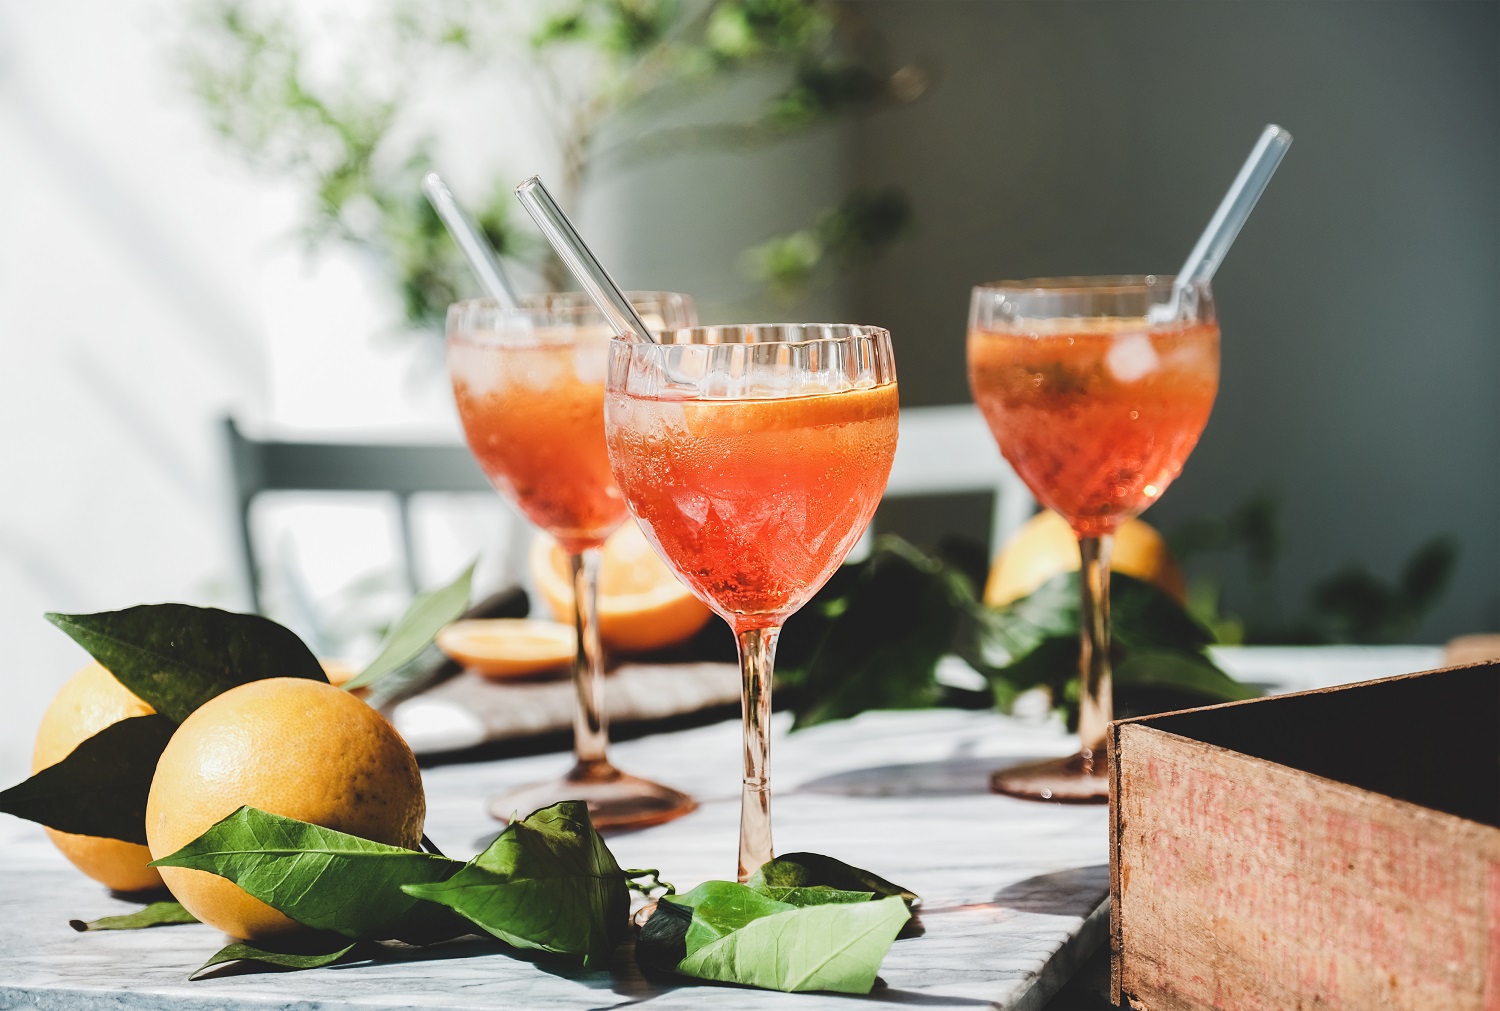 Spritz-Aperitif-Alkohol-Cocktail in Gläsern mit frischen Orangen und Eis auf einer grauen Marmorplatte, selektiver Fokus, Nahaufnahme. Konzept für erfrischende Sommergetränke